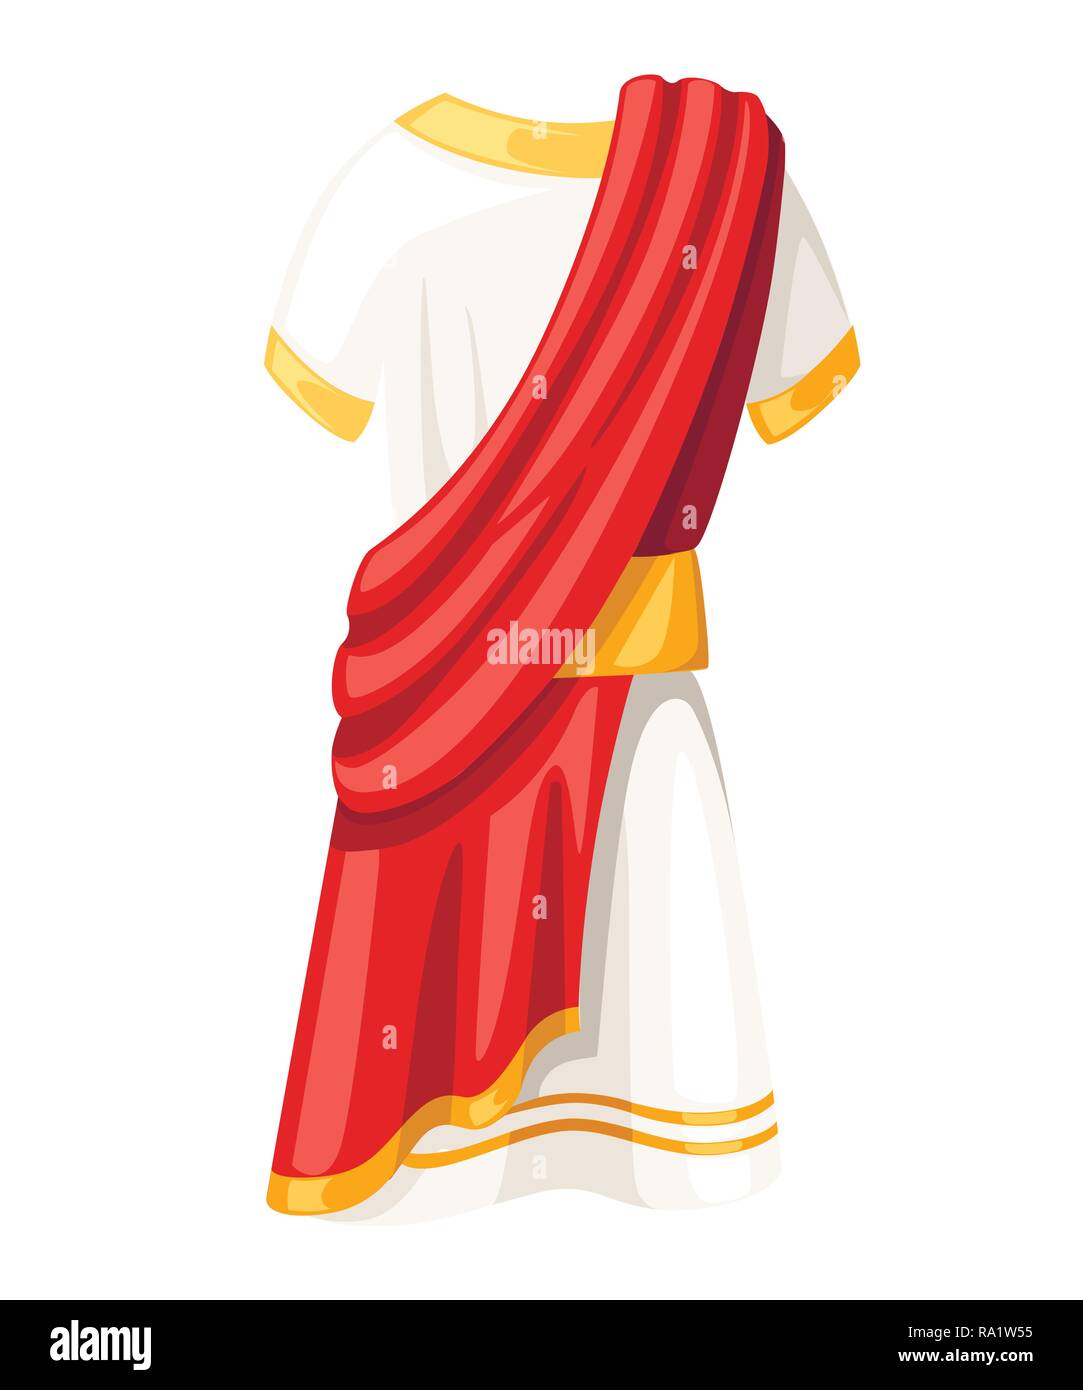 Le sénateur romain tunique. B.C. classique vêtements. Télévision vector illustration isolé sur fond blanc. Illustration de Vecteur